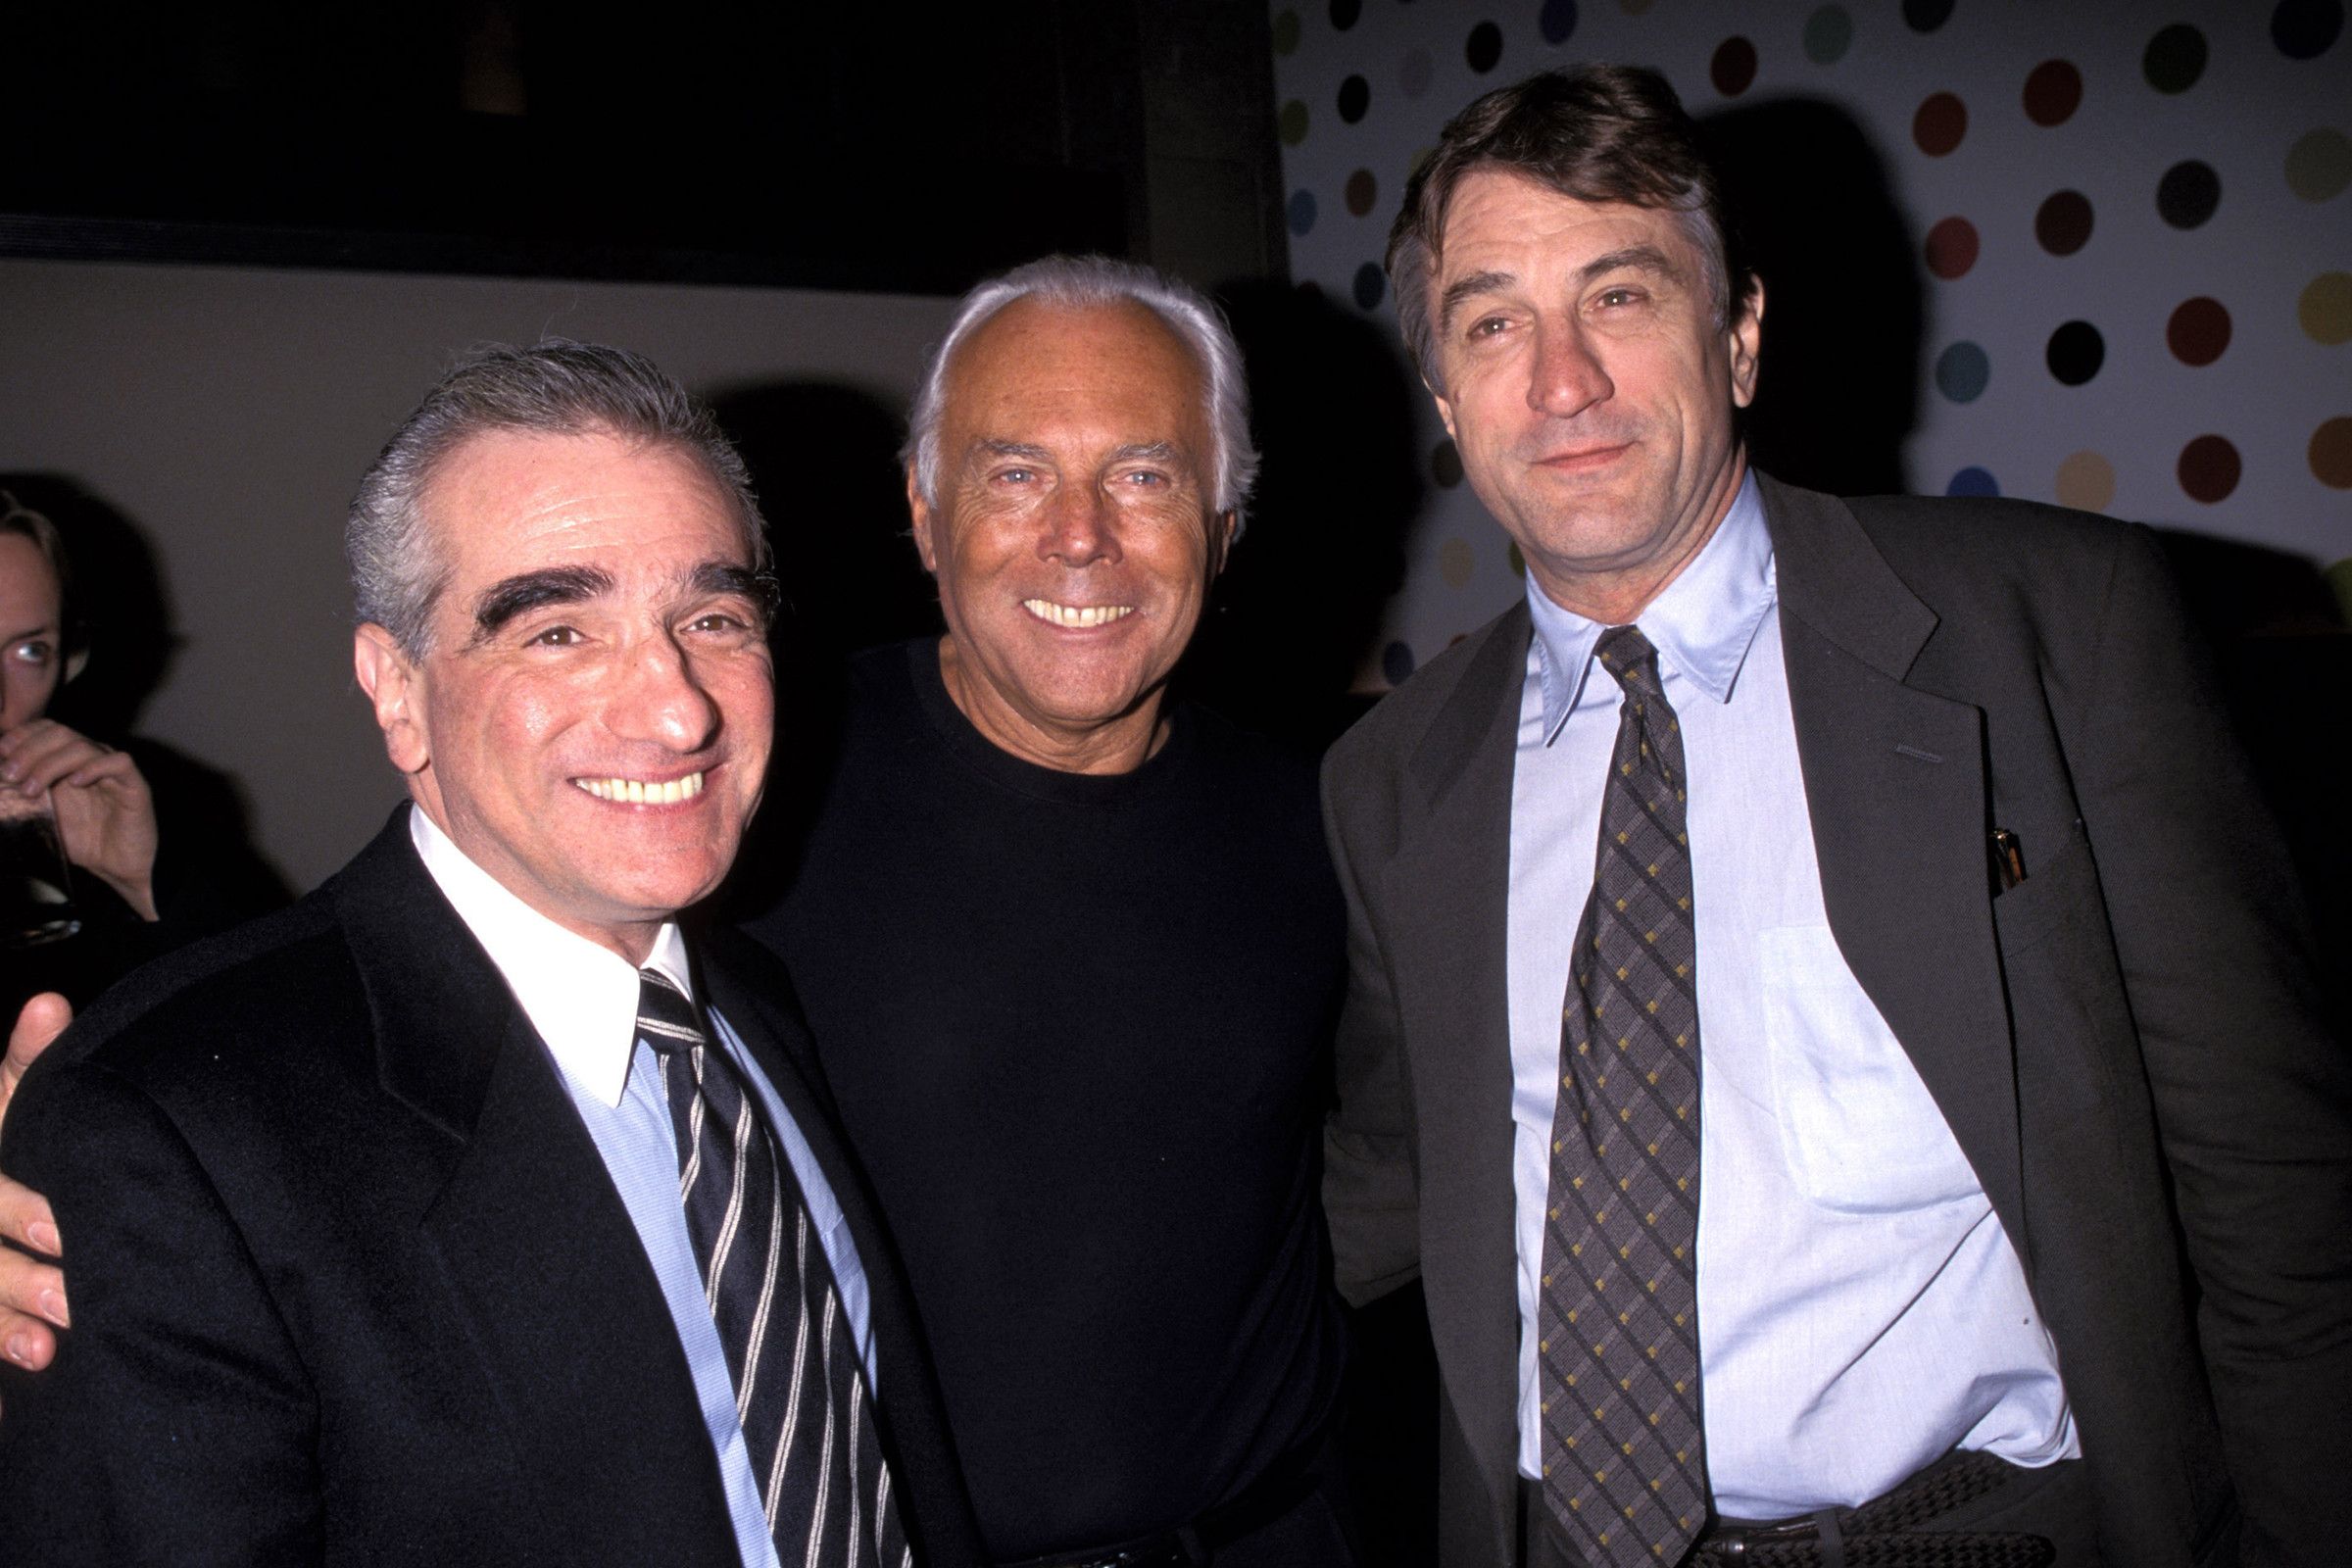 Martin scorsese, Giorgio Armani, and Robert De Niro in 1990